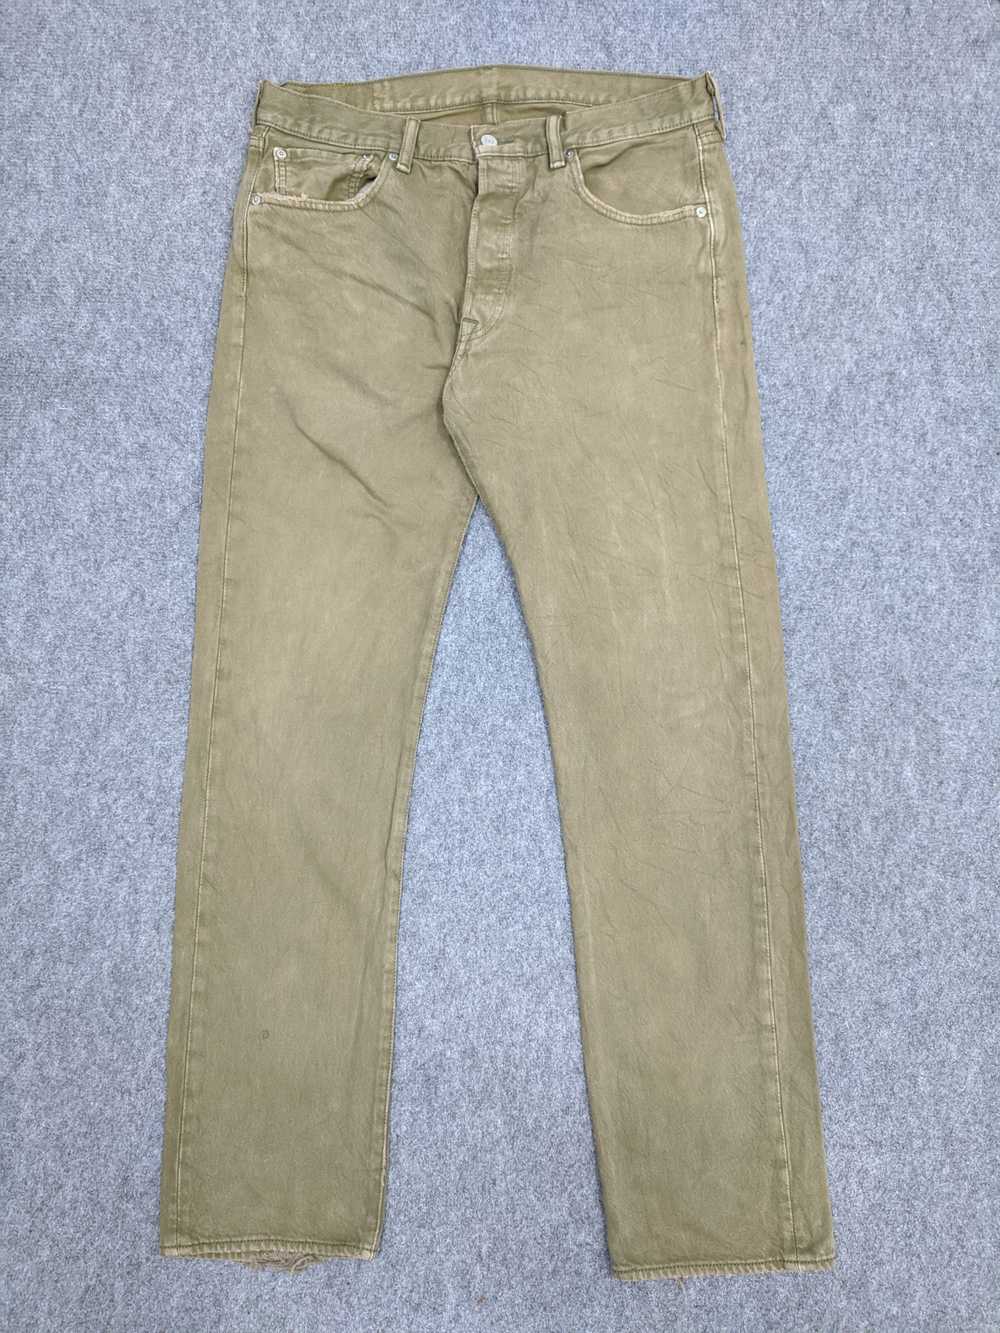 Vintage - Vintage 90s Sun Faded Levis 501 Jeans - image 1